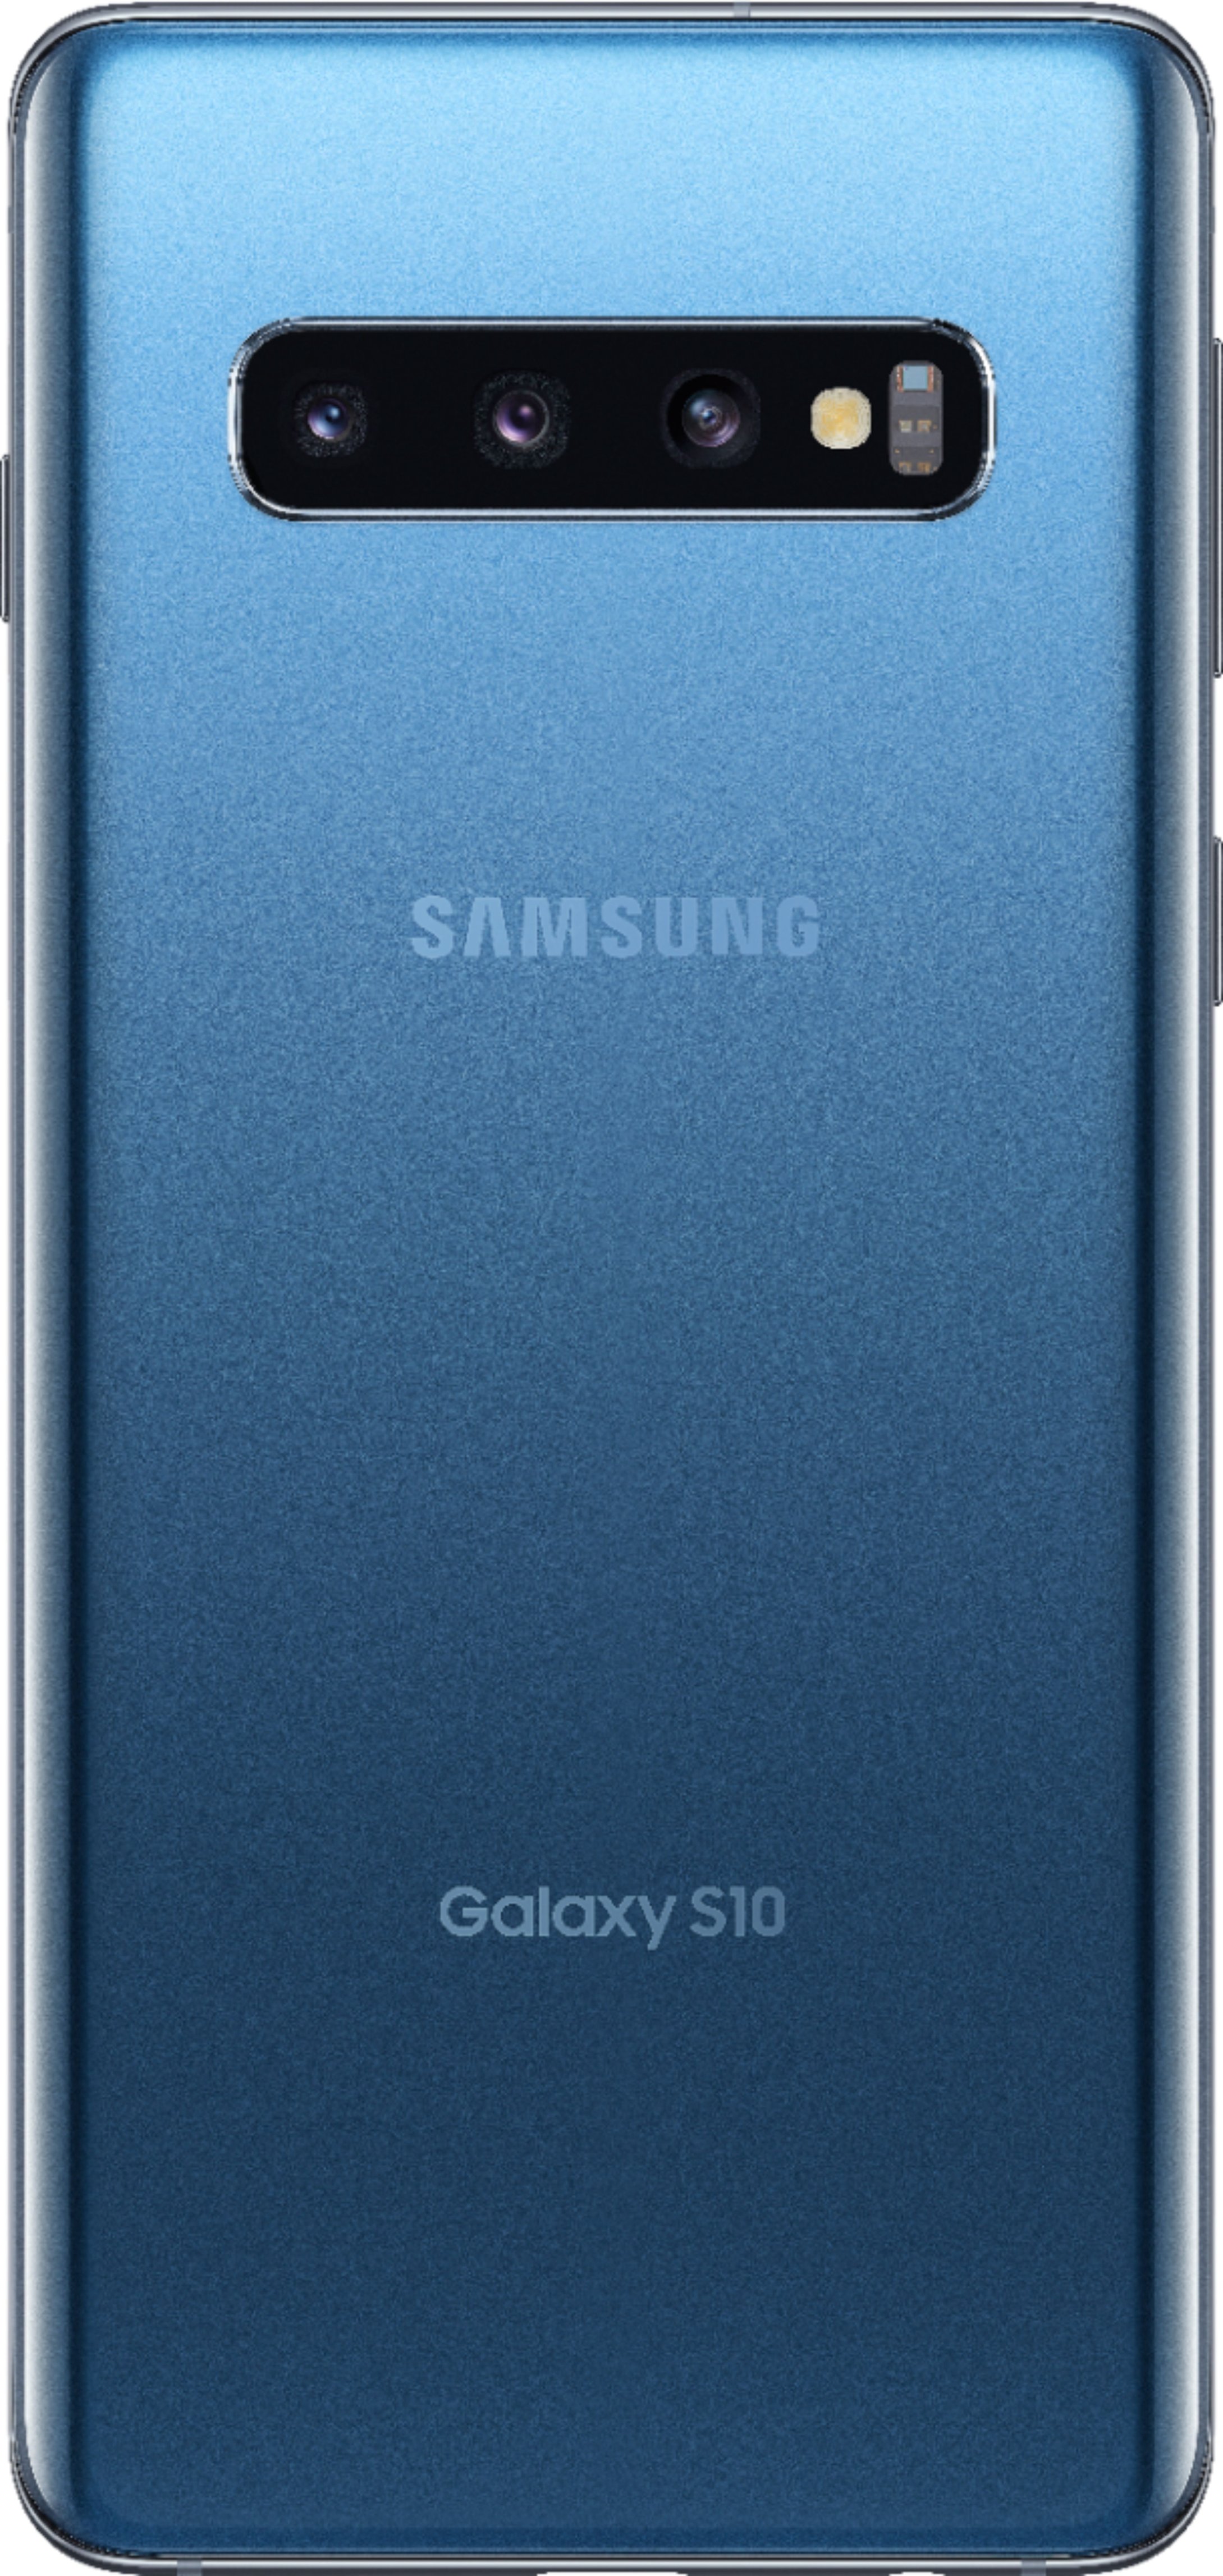 スマートフォン/携帯電話 スマートフォン本体 Galaxy S10 Prism Blue 128 GB SIMフリー justice.gouv.cd